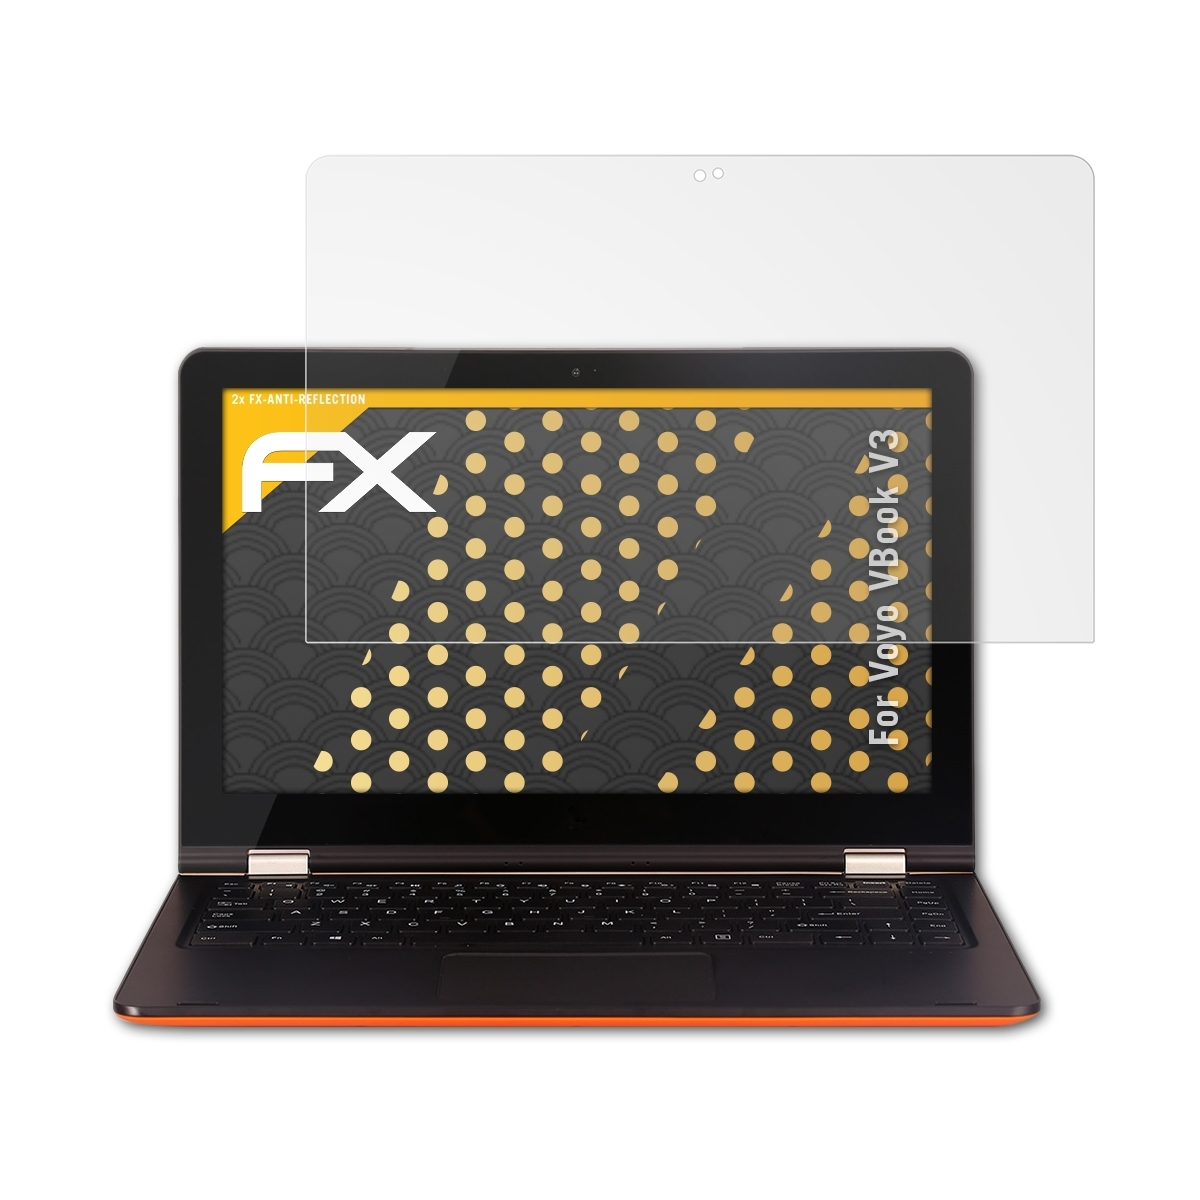 2x FX-Antireflex Voyo VBook Displayschutz(für V3) ATFOLIX